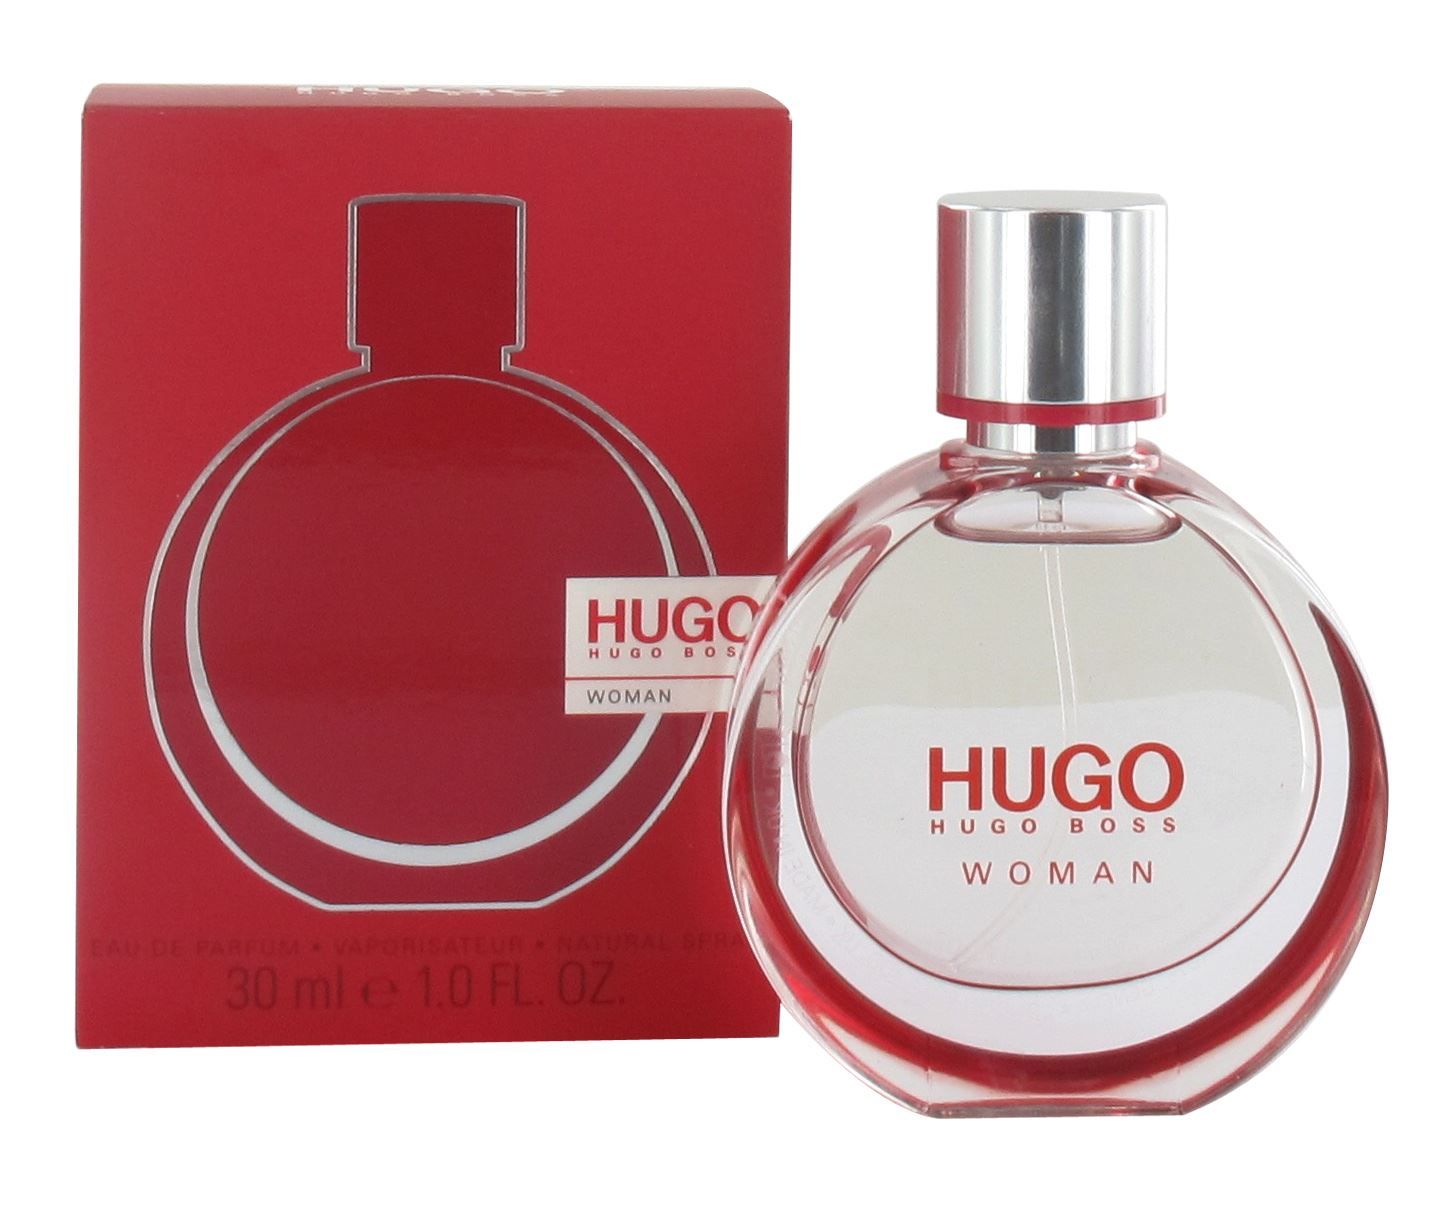 Хуго босс описание. Hugo Boss woman Eau de Parfum. Hugo Boss woman 30 мл. Hugo Boss Hugo woman Eau de Parfum. Парфюмерная вода Hugo Boss Hugo woman, 30 мл.